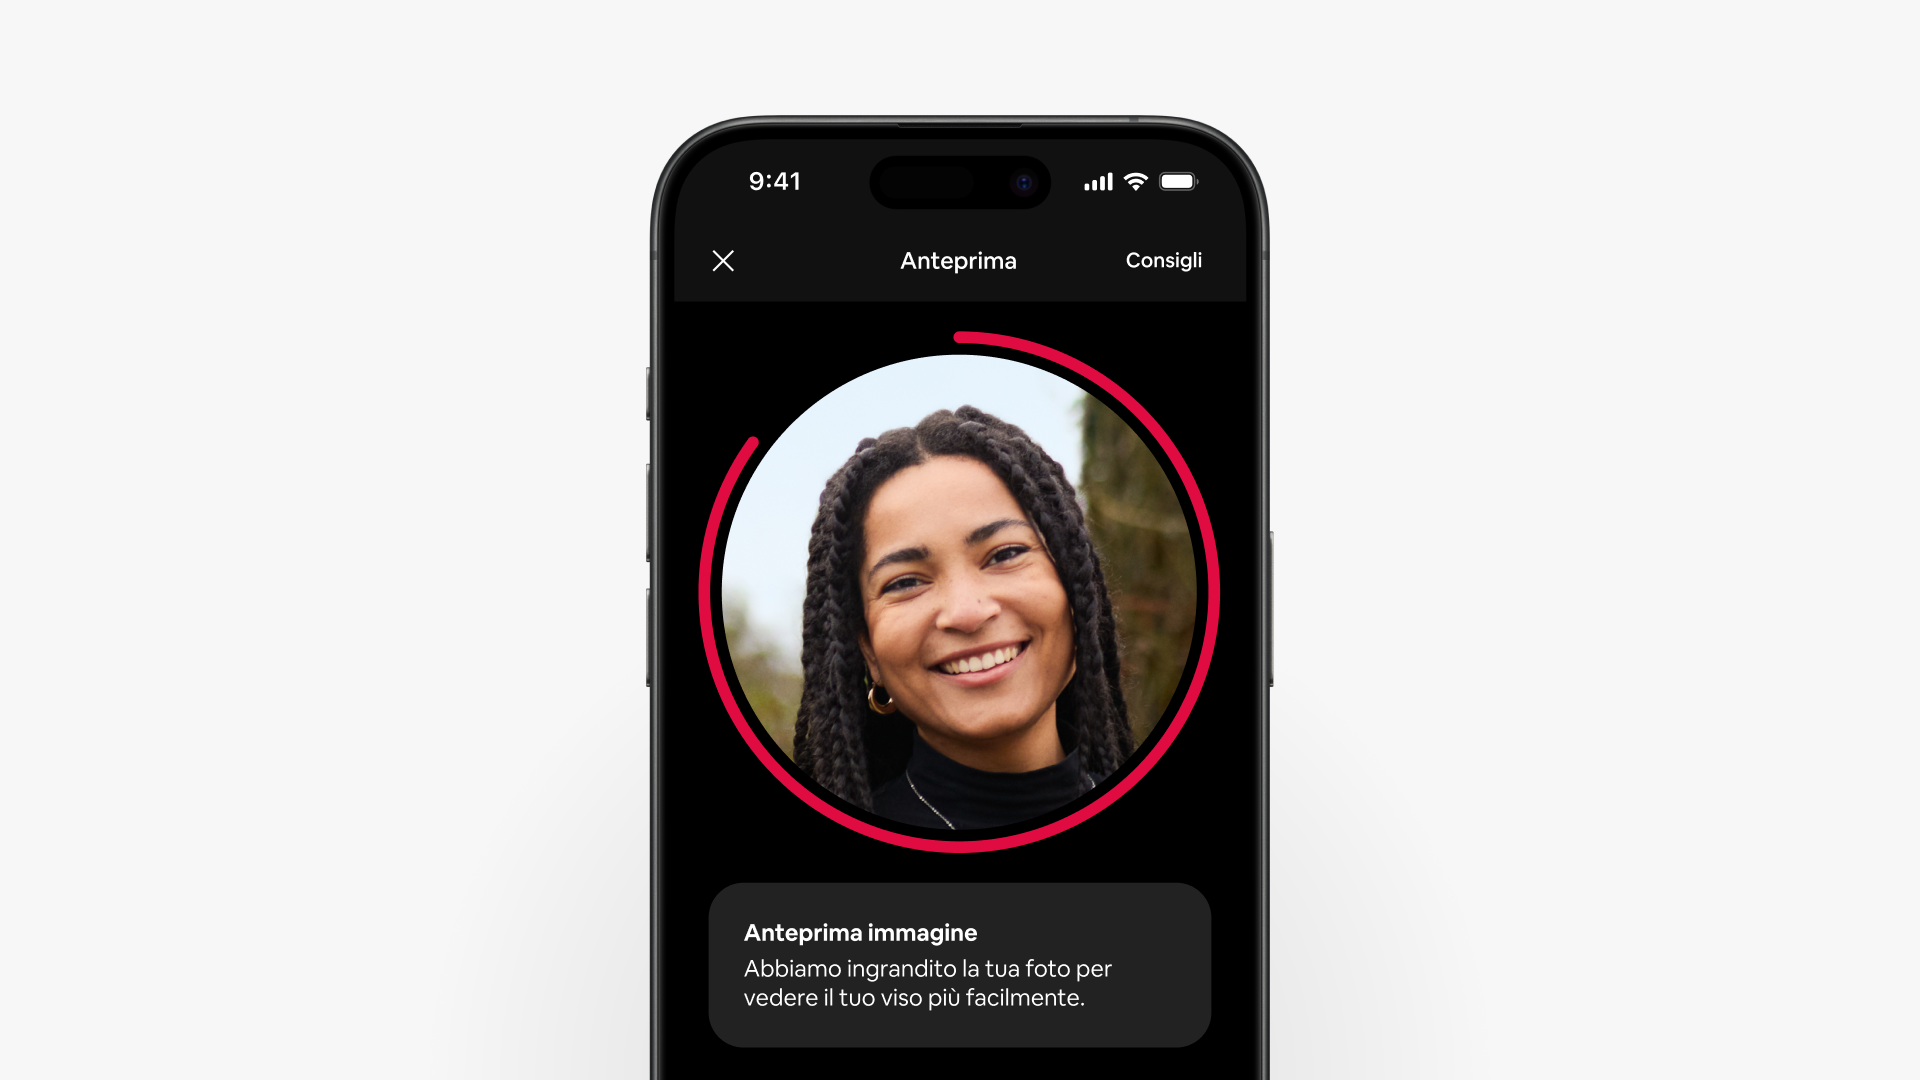 La schermata di uno smartphone mostra l'acquisizione guidata delle foto in azione, ingrandendo il volto di un ospite per ottenere uno scatto migliore.